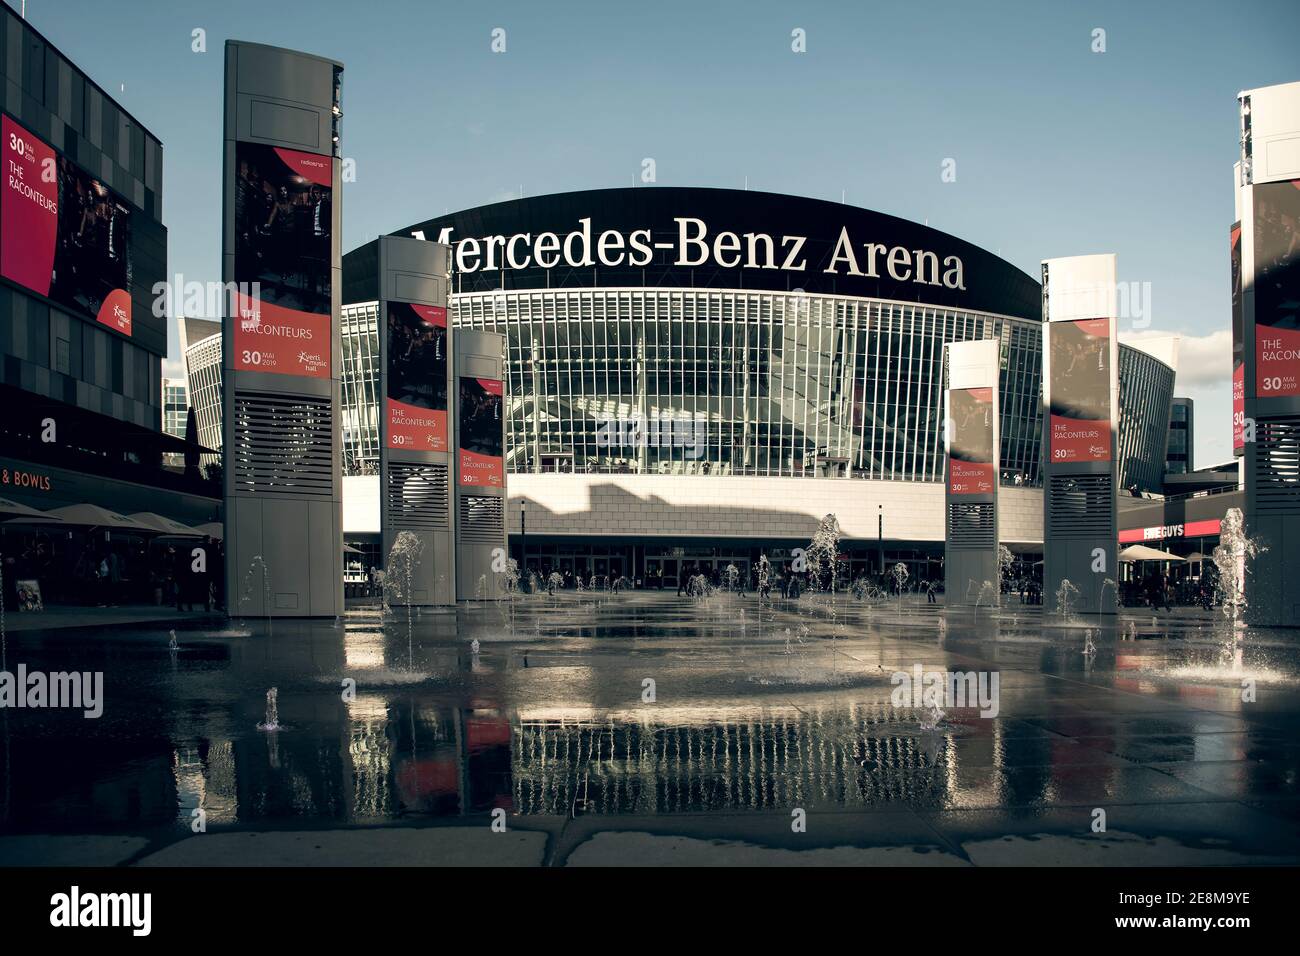 14 maggio 2019 Berlino, Germania - la Mercedes-Benz Arena di Berlino, un grande stadio per 15 000 visitatori Foto Stock